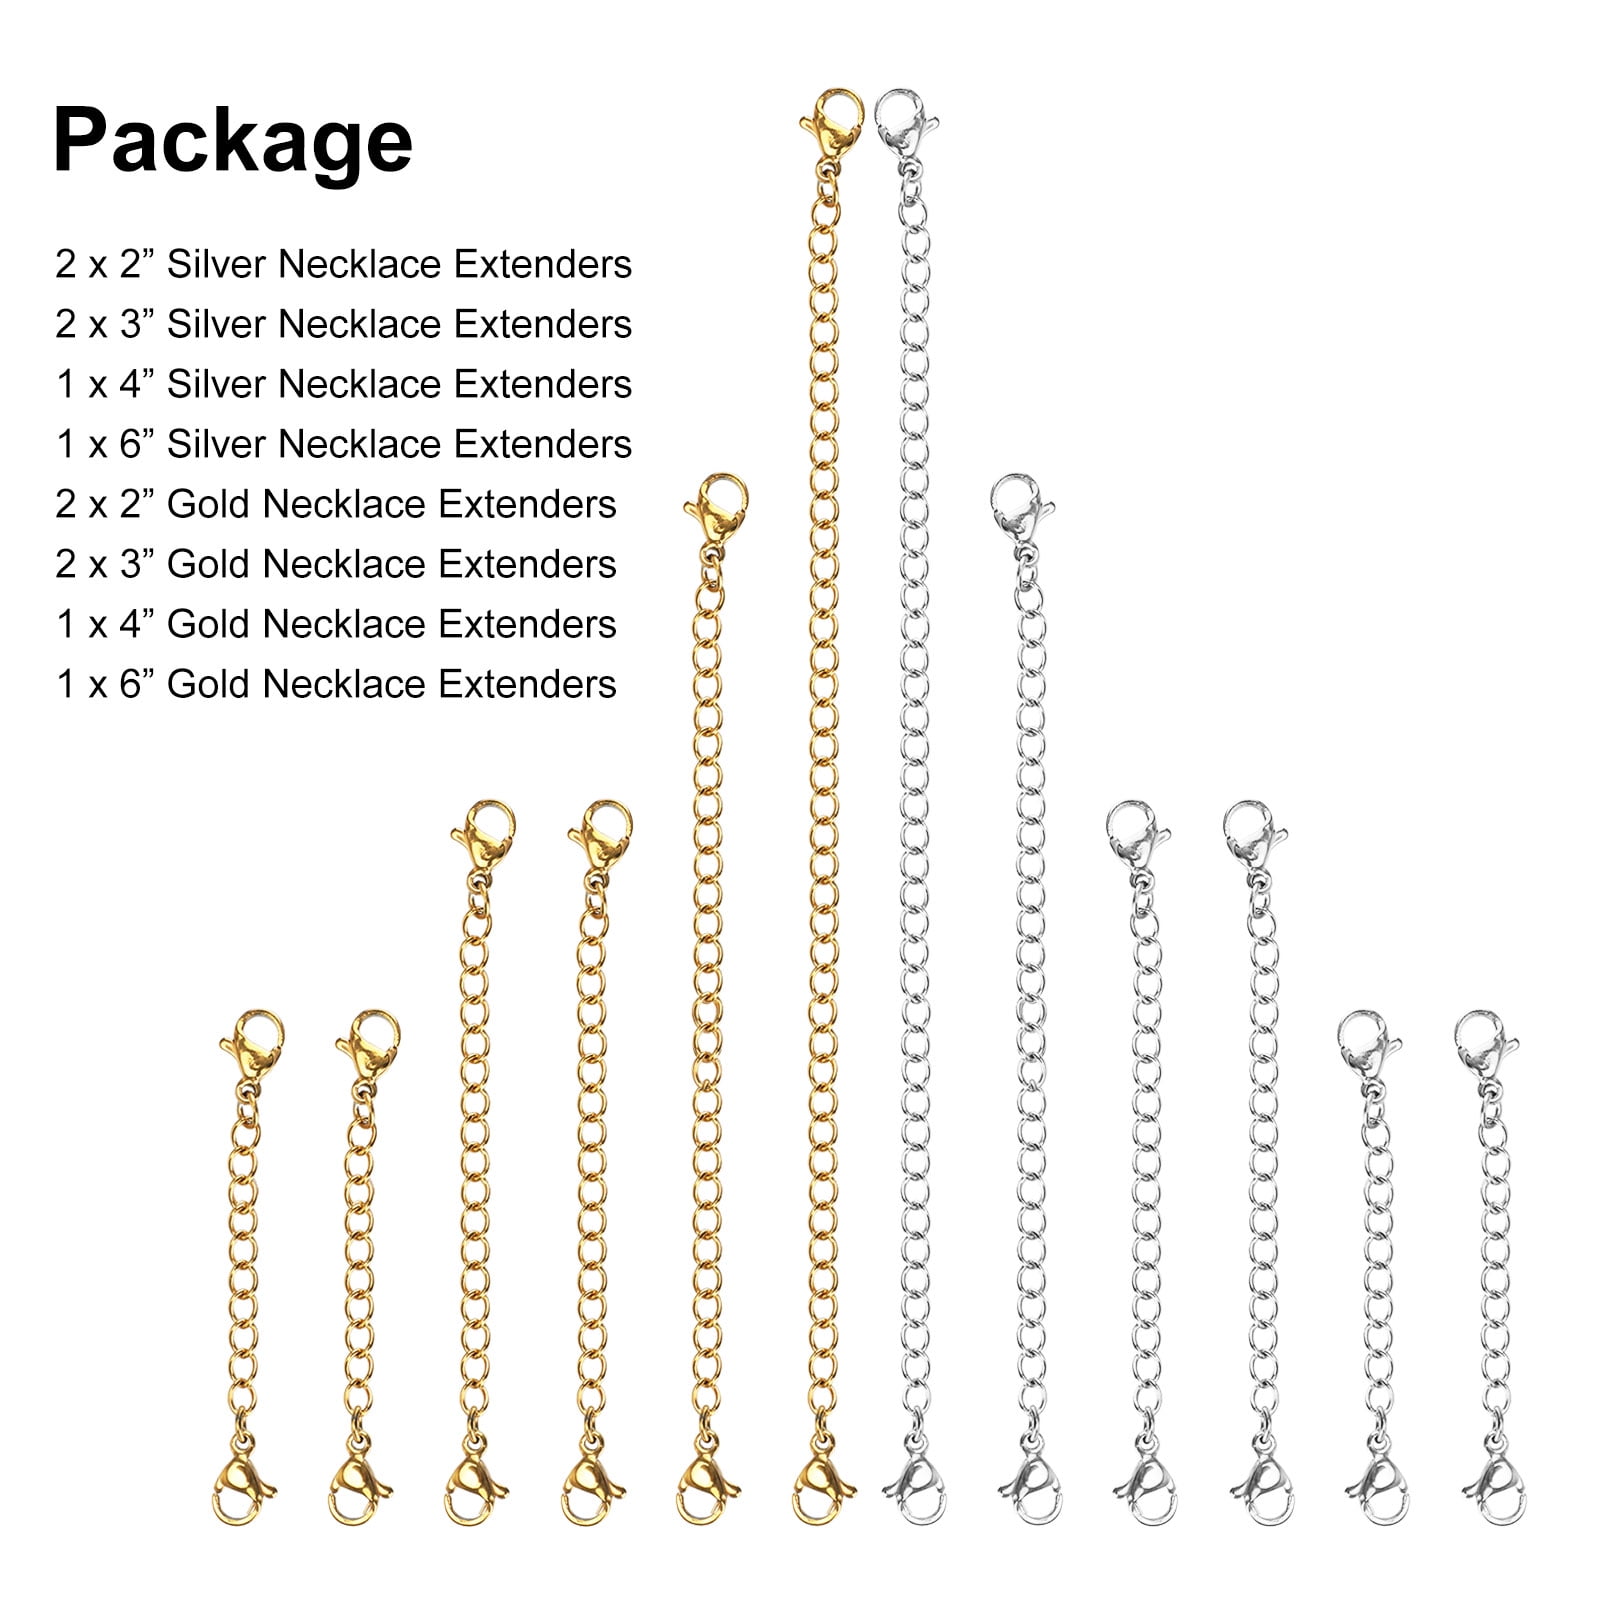 Buy Navmav 24Pcs Necklace Extenders, Stainless Steel Chain